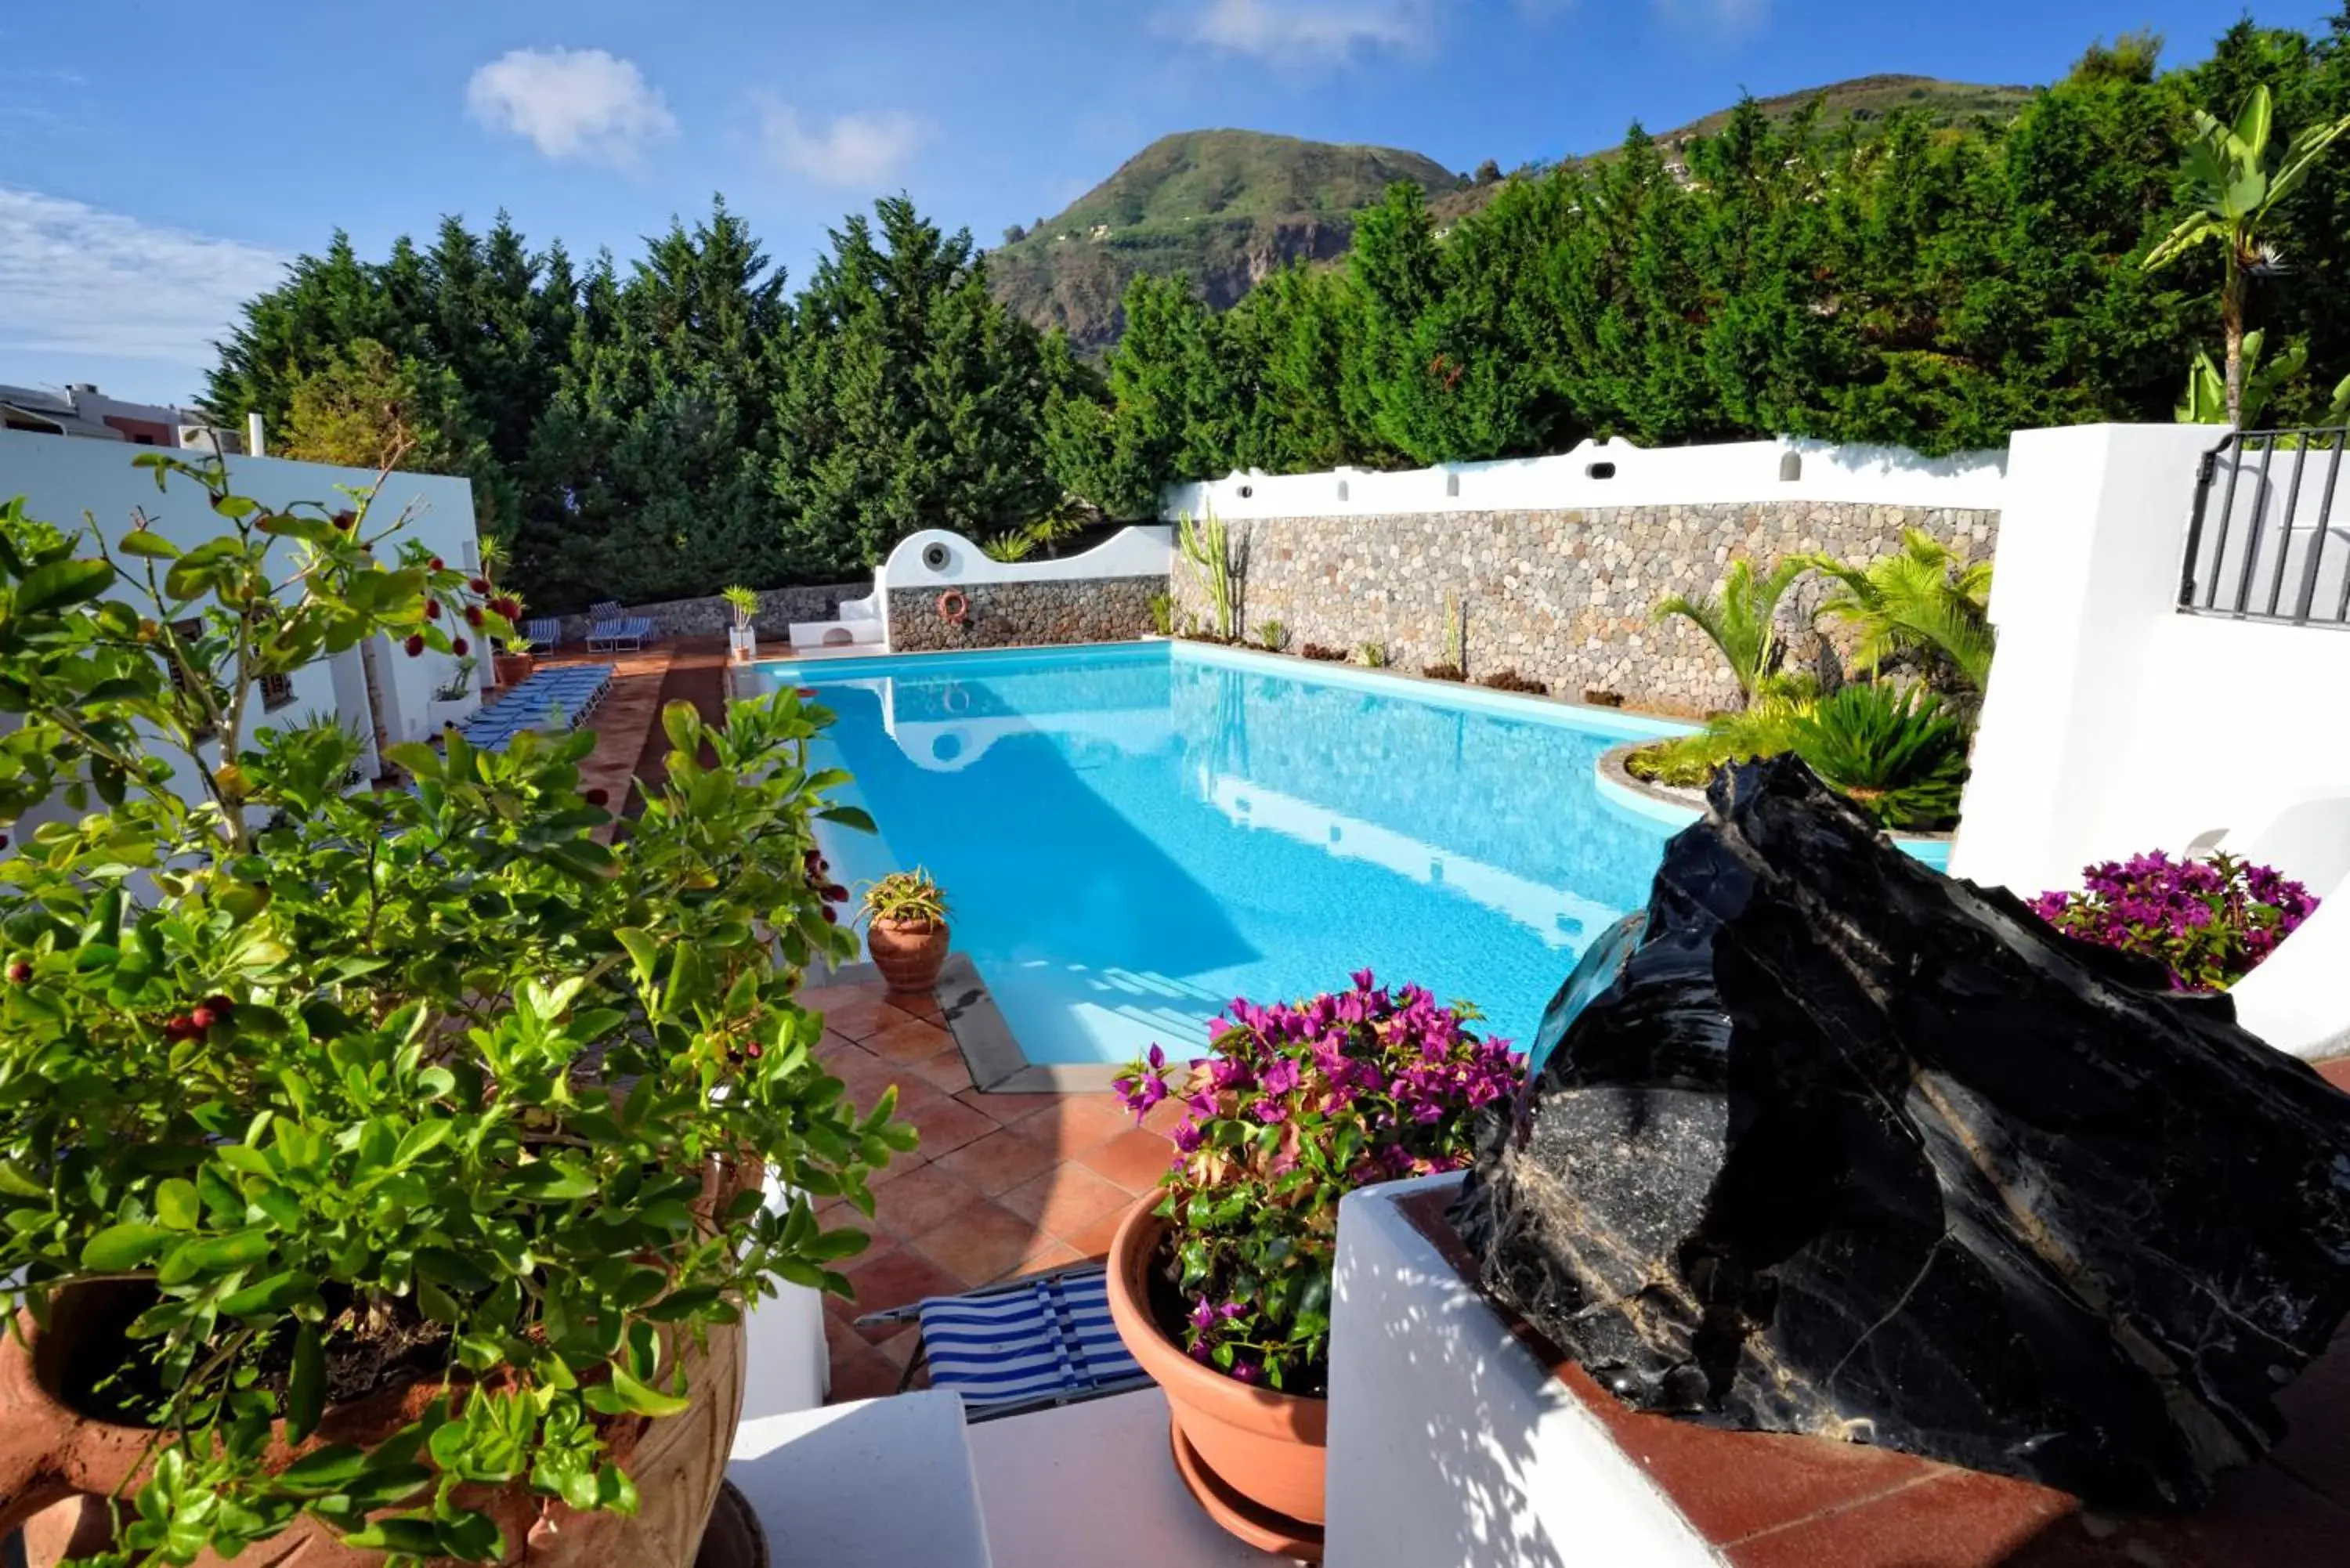 Pool View in Gattopardo Park Hotel